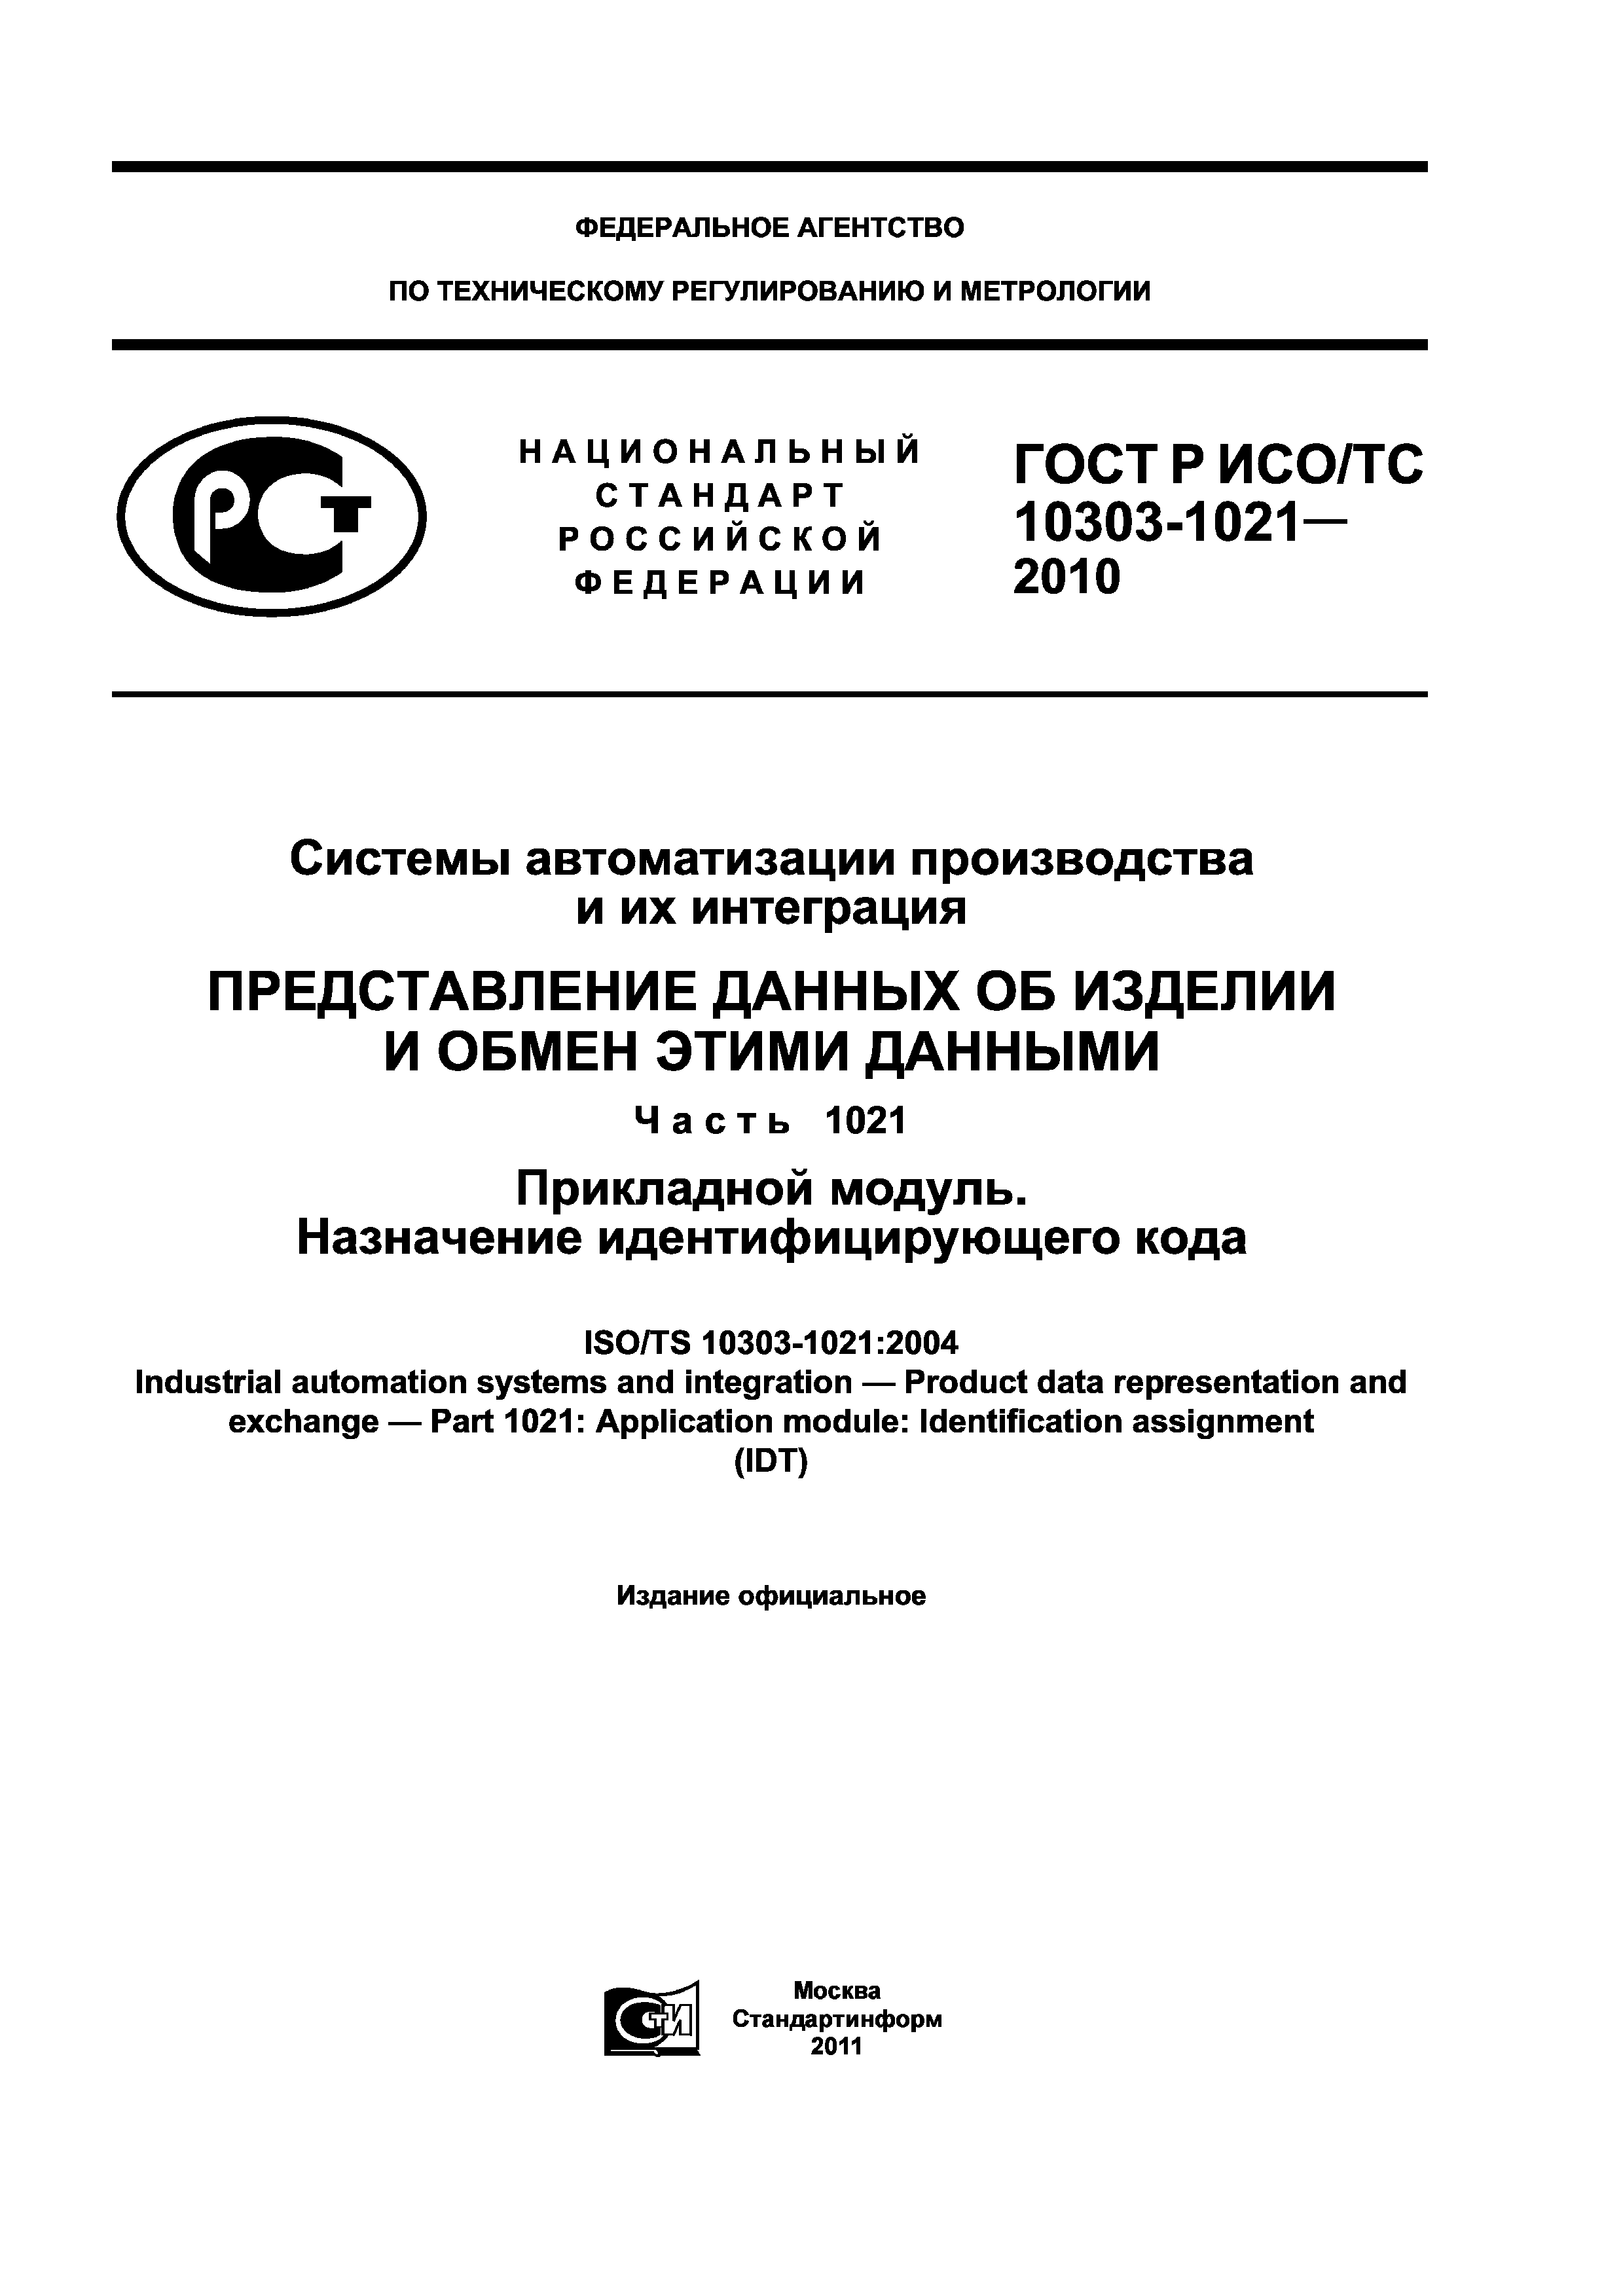 ГОСТ Р ИСО/ТС 10303-1021-2010